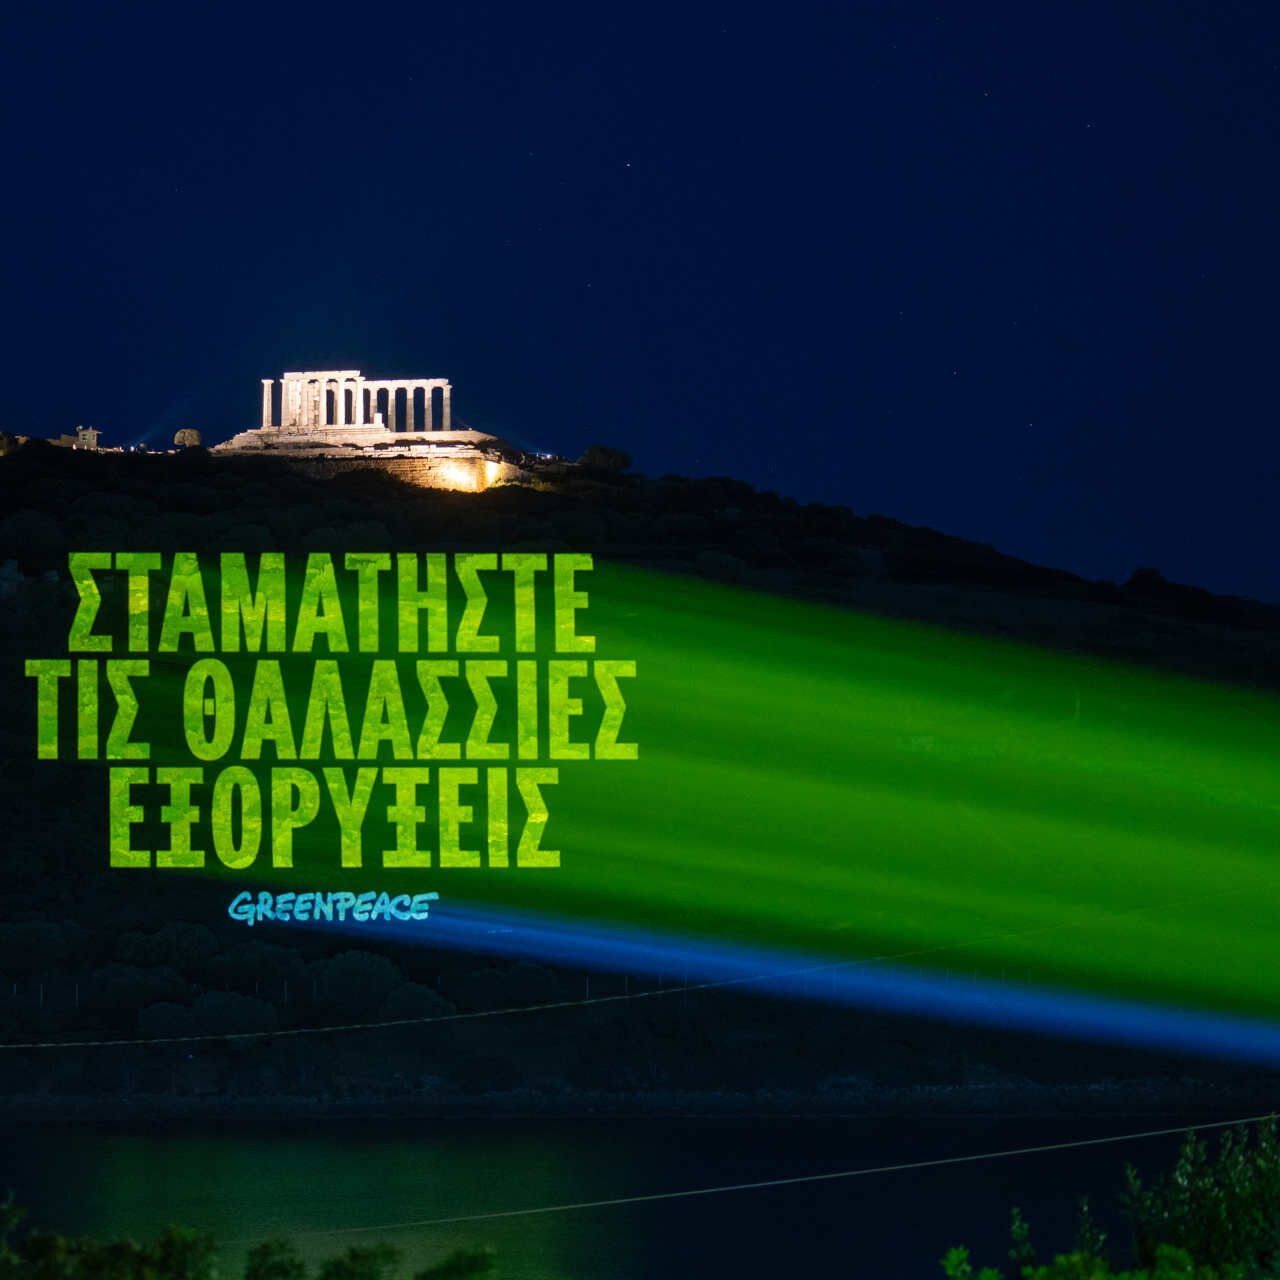 Grécko: správa v gréčtine, ktorá znie